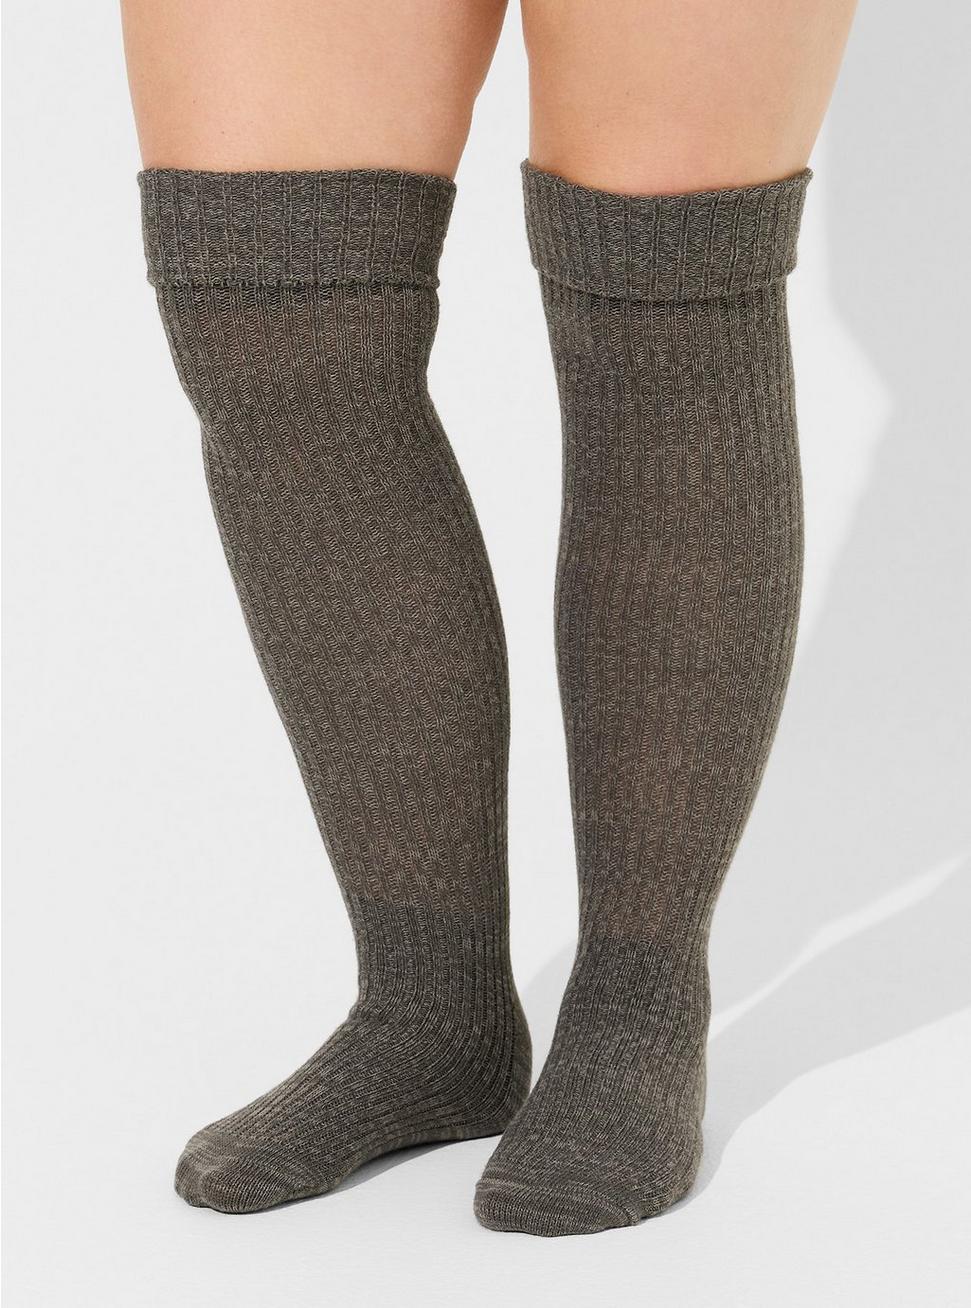 david feldon recommends torrid knee high socks pic